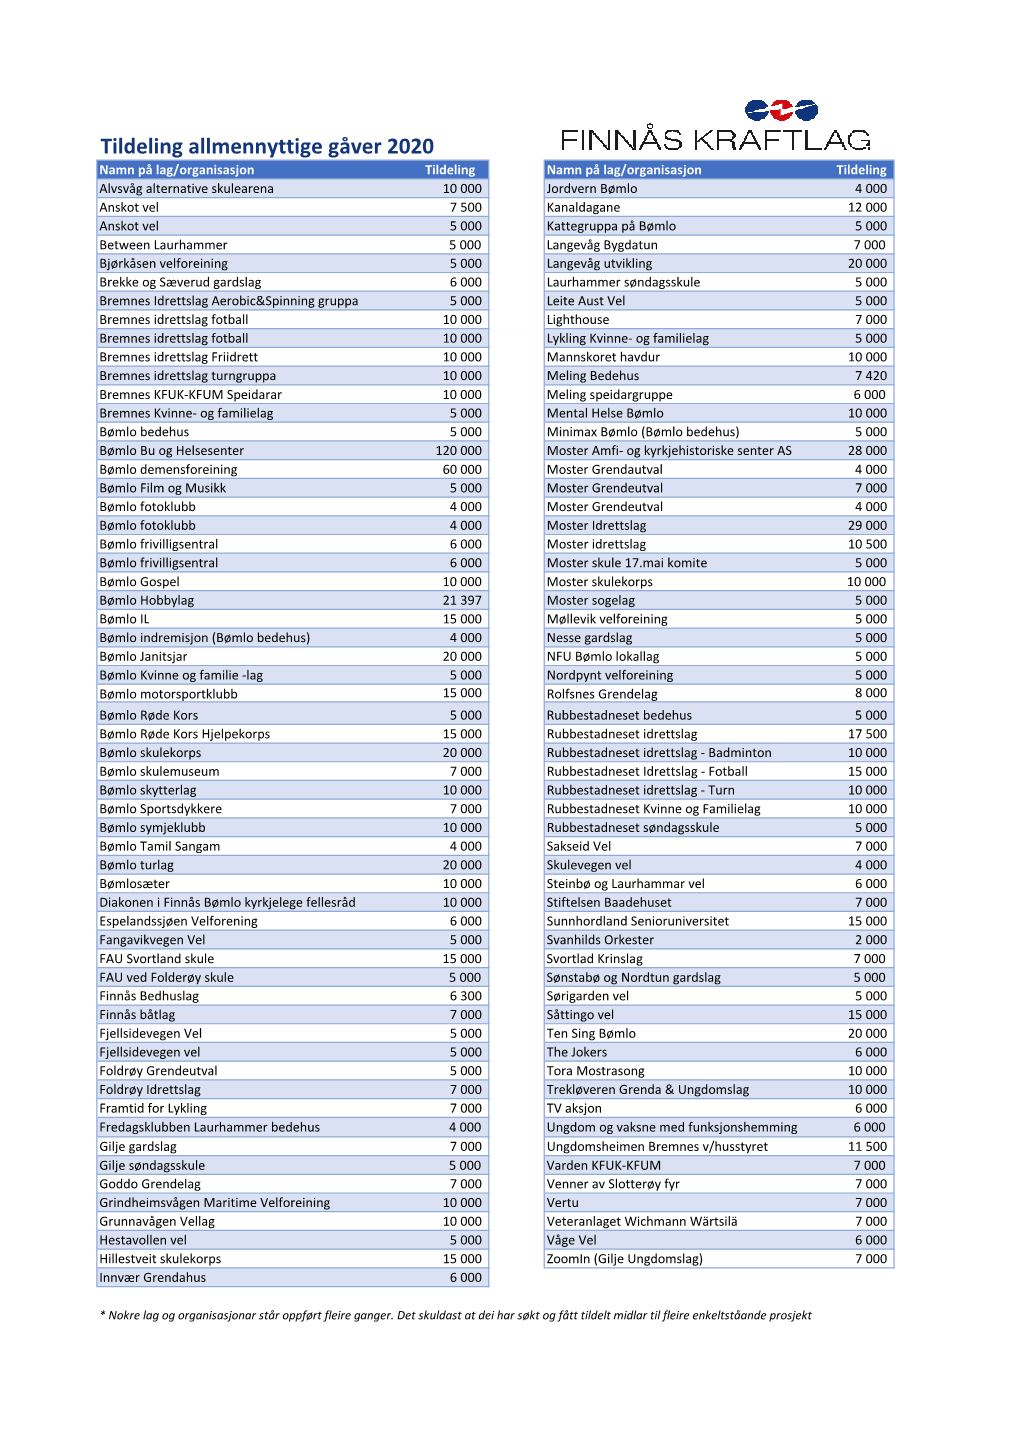 Tildeling Allmennyttige Gåver 2020 (PDF, 71KB)